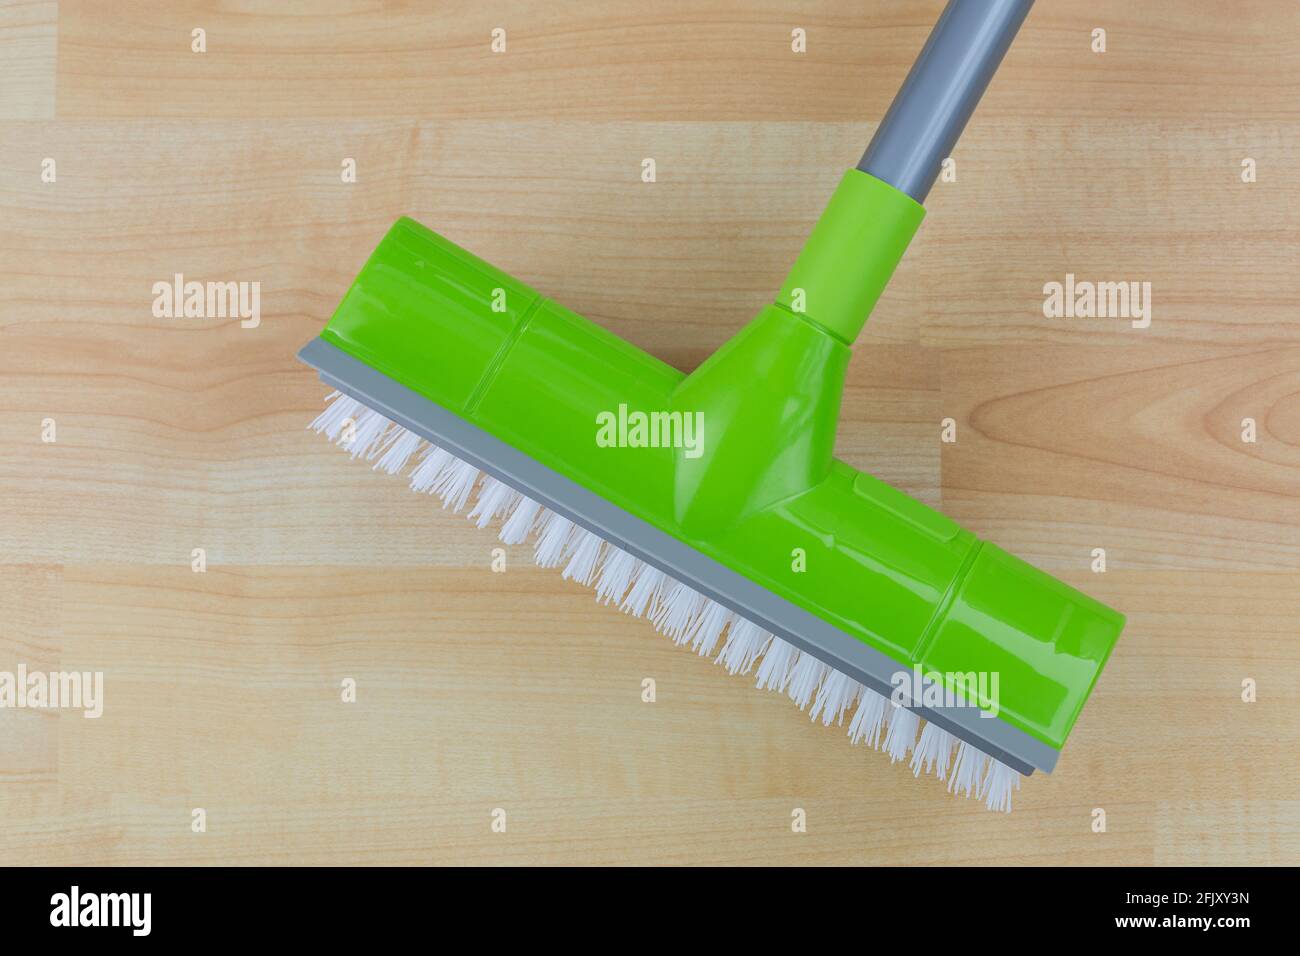 Pulizia del pavimento spazzola dura con spatola dell'asciugatore, bordo in gomma affilato per la pulizia con il dito Foto Stock